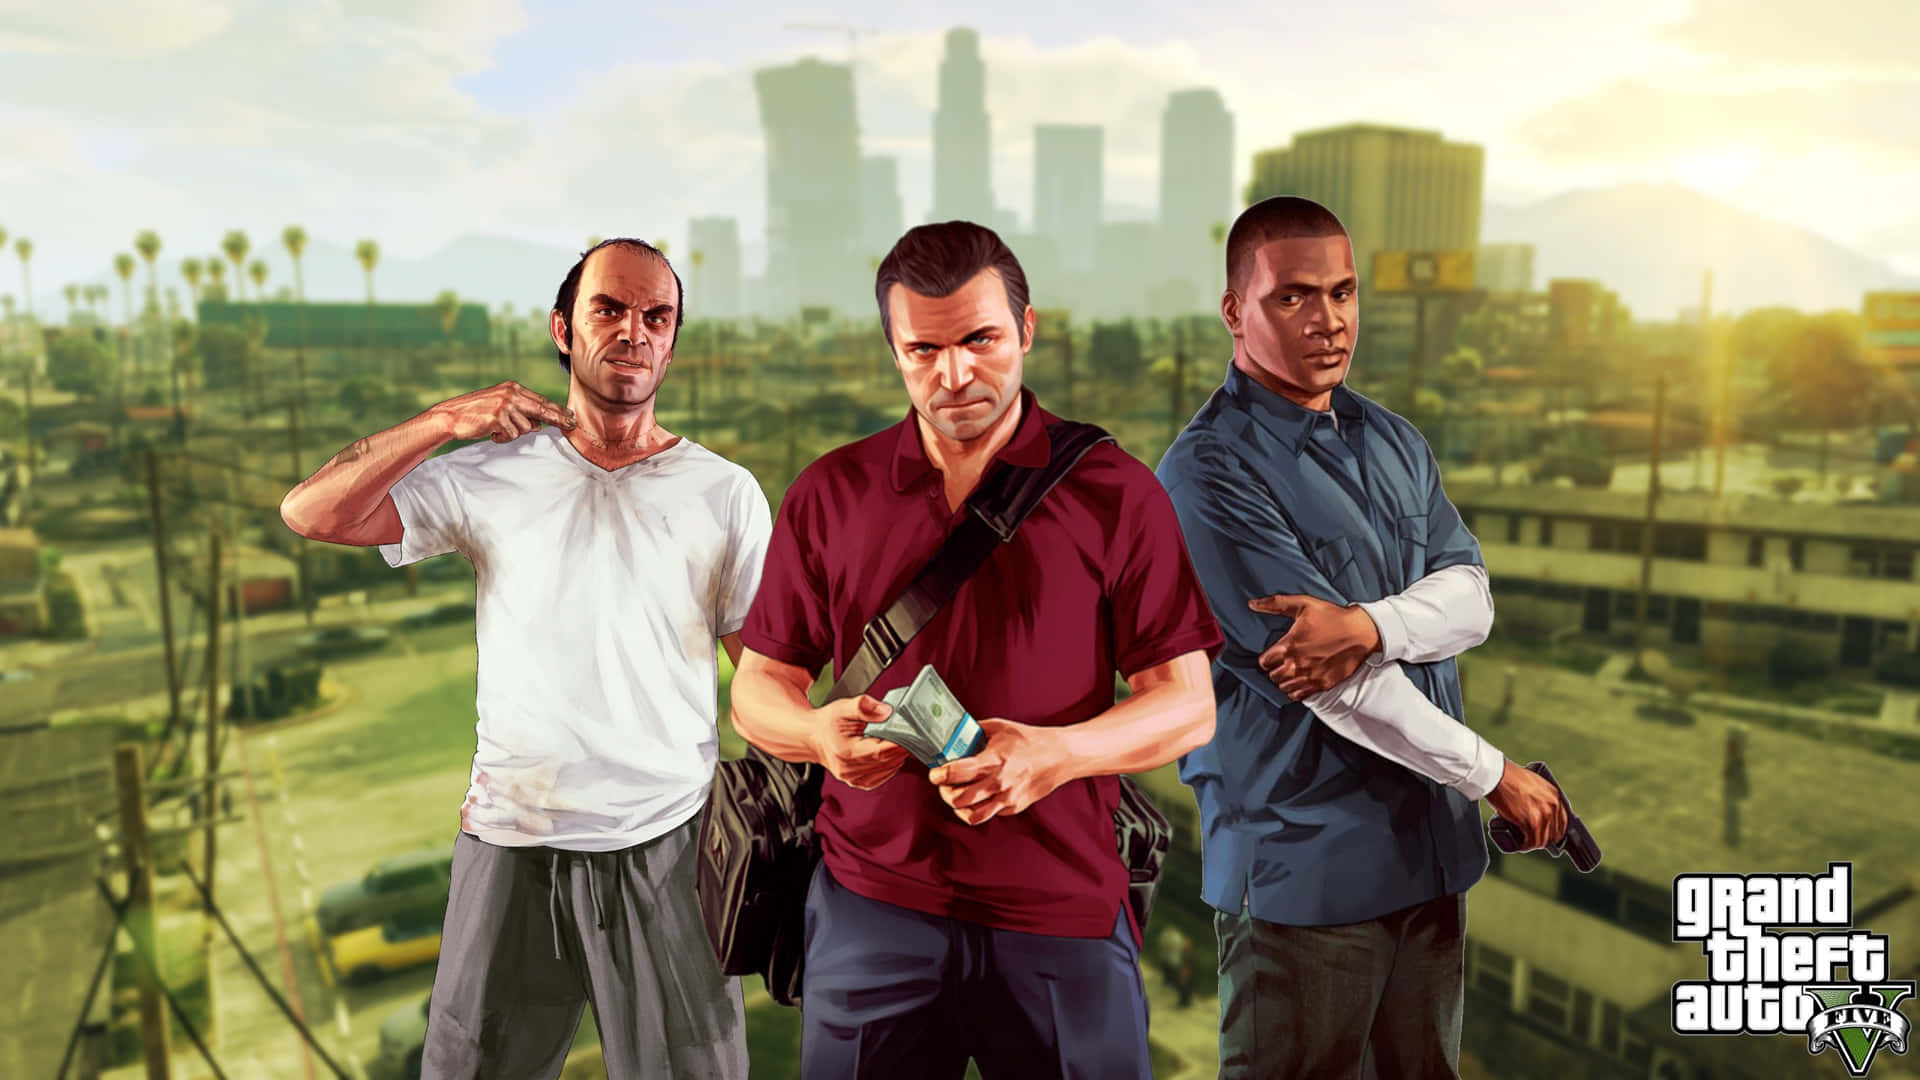 Klassisk Grand Theft Auto V-spil, nu i fantastisk 2560x1440-opløsning. Wallpaper